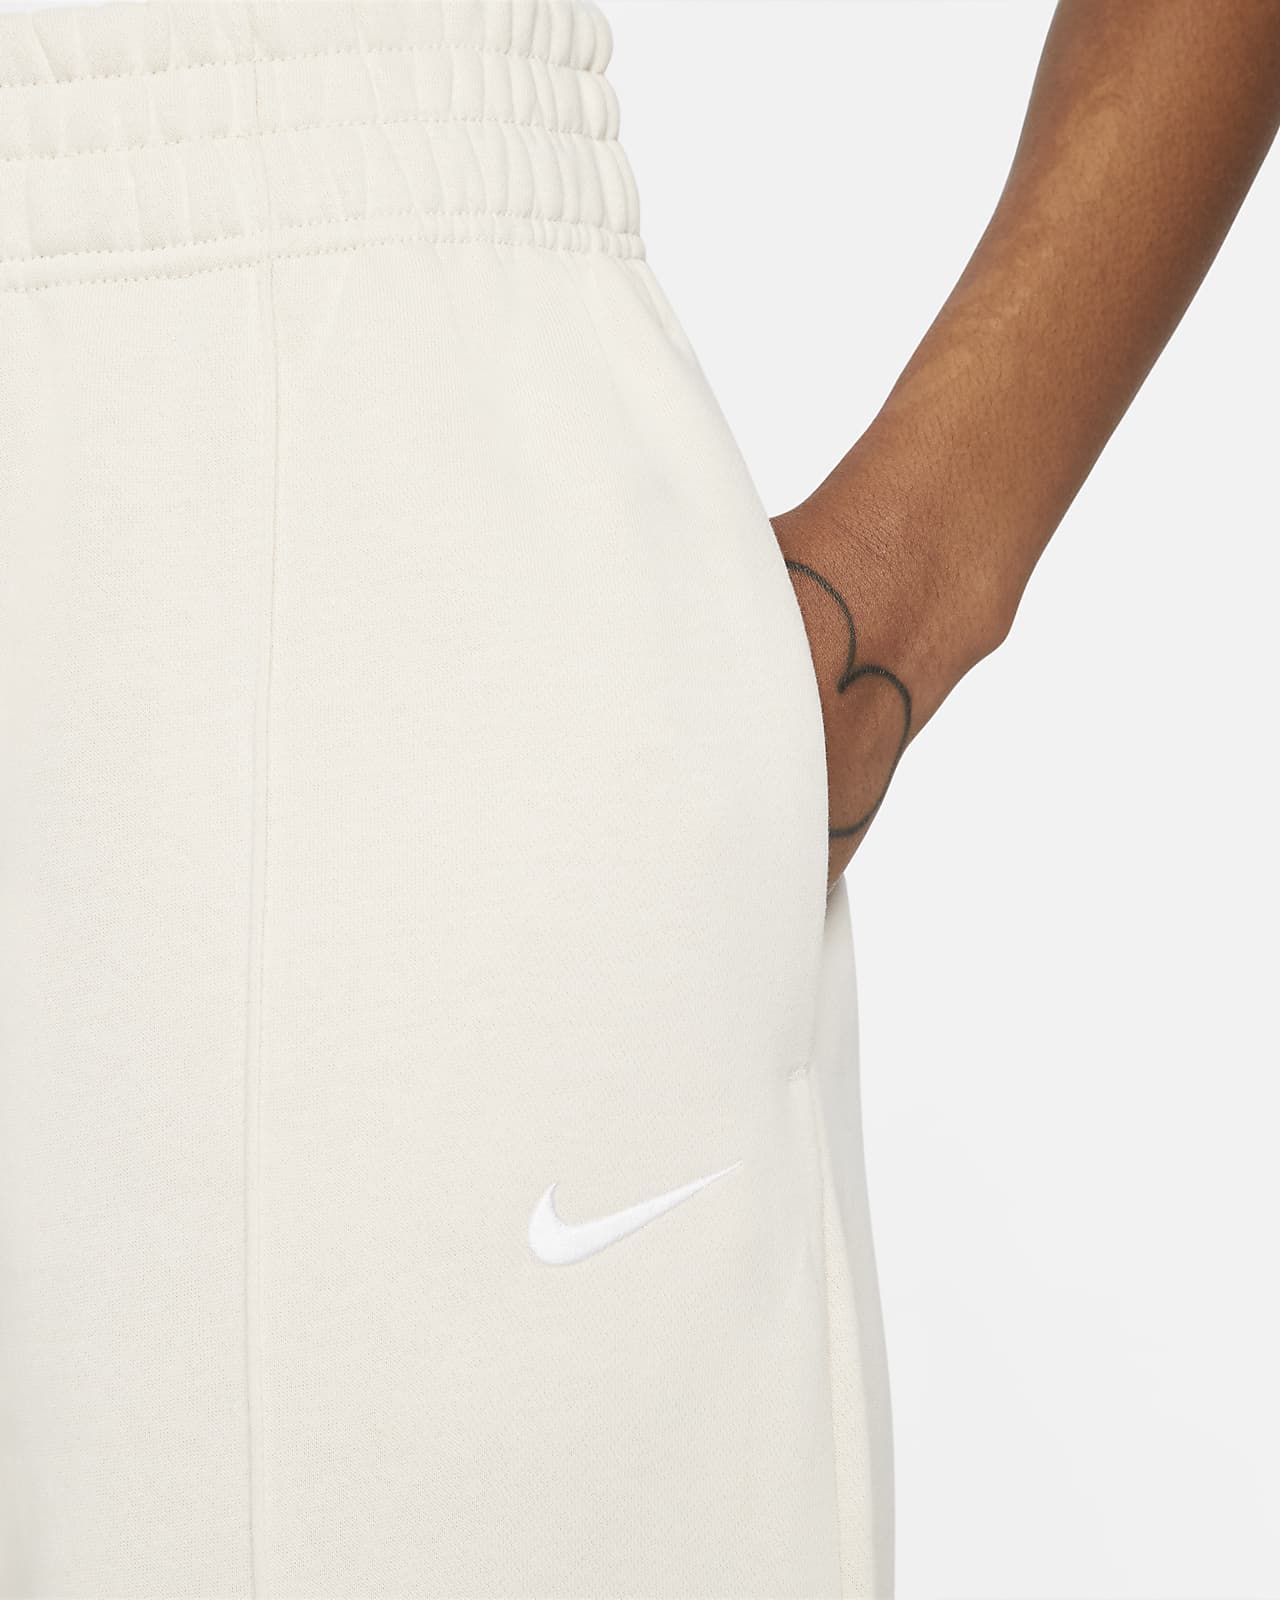 Nike Sportswear Essential Collection Women\'s Fleece Pants.